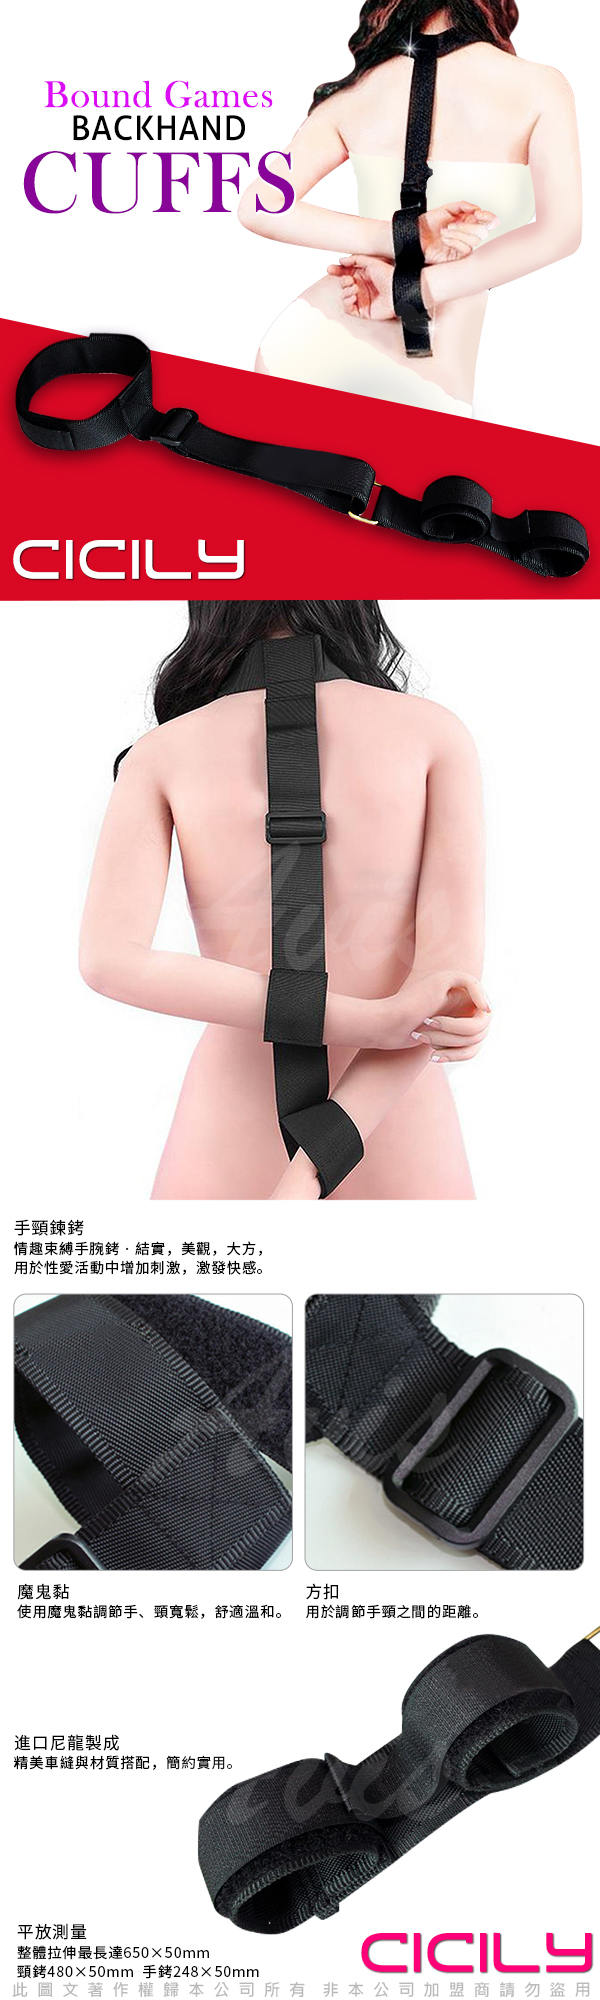 虐戀精品CICILY 反手背銬+脖子束縛綁帶 BDSM道具